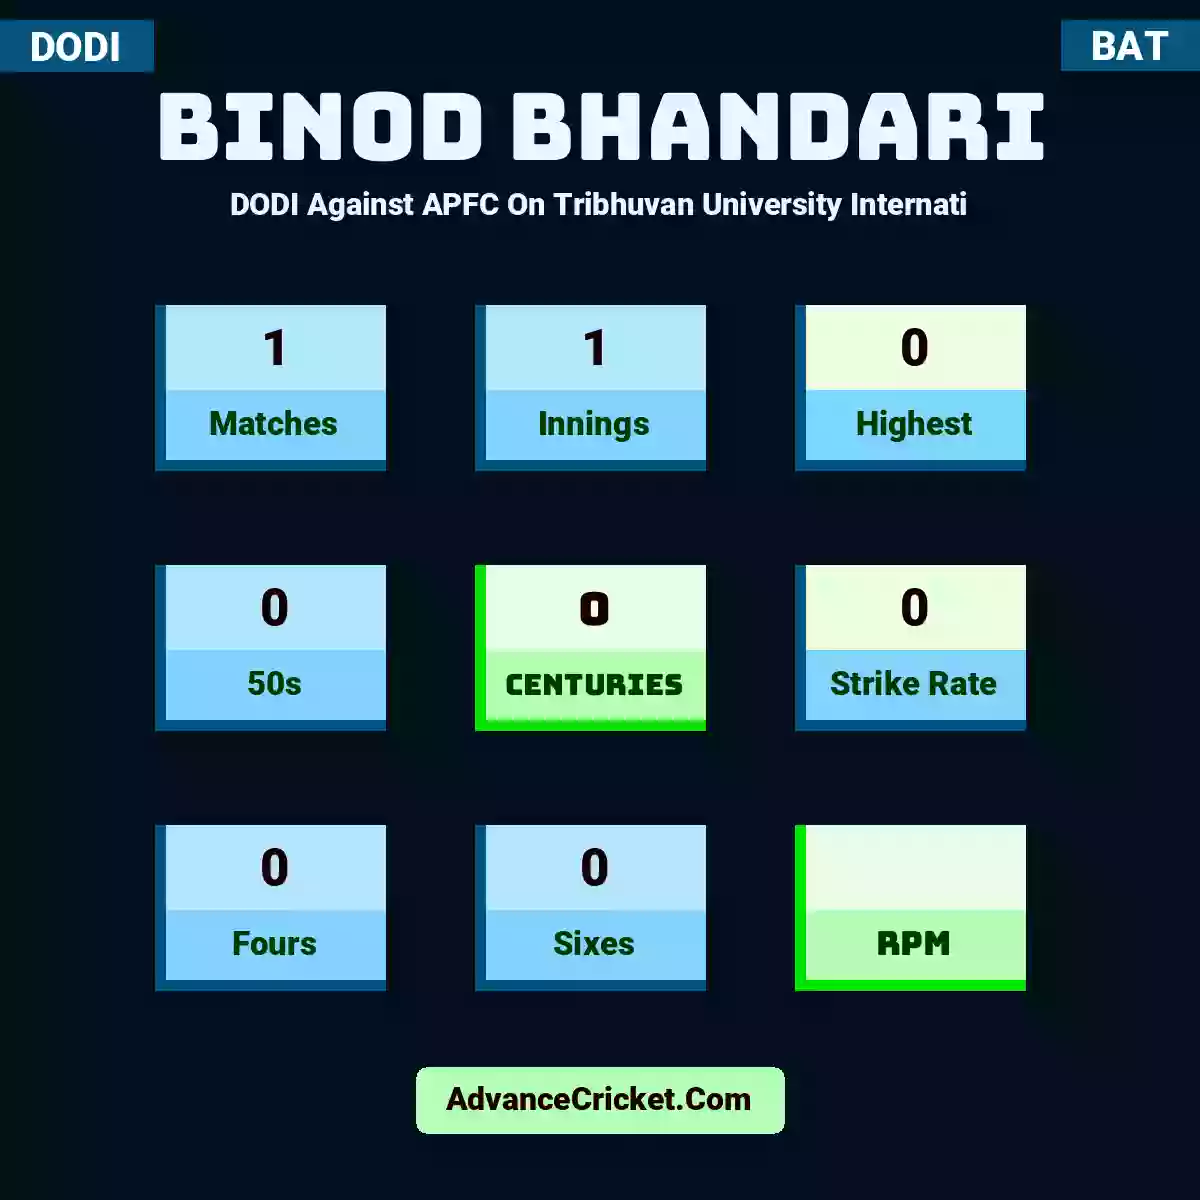 Binod Bhandari DODI  Against APFC On Tribhuvan University Internati, Binod Bhandari played 1 matches, scored 0 runs as highest, 0 half-centuries, and 0 centuries, with a strike rate of 0. B.Bhandari hit 0 fours and 0 sixes.